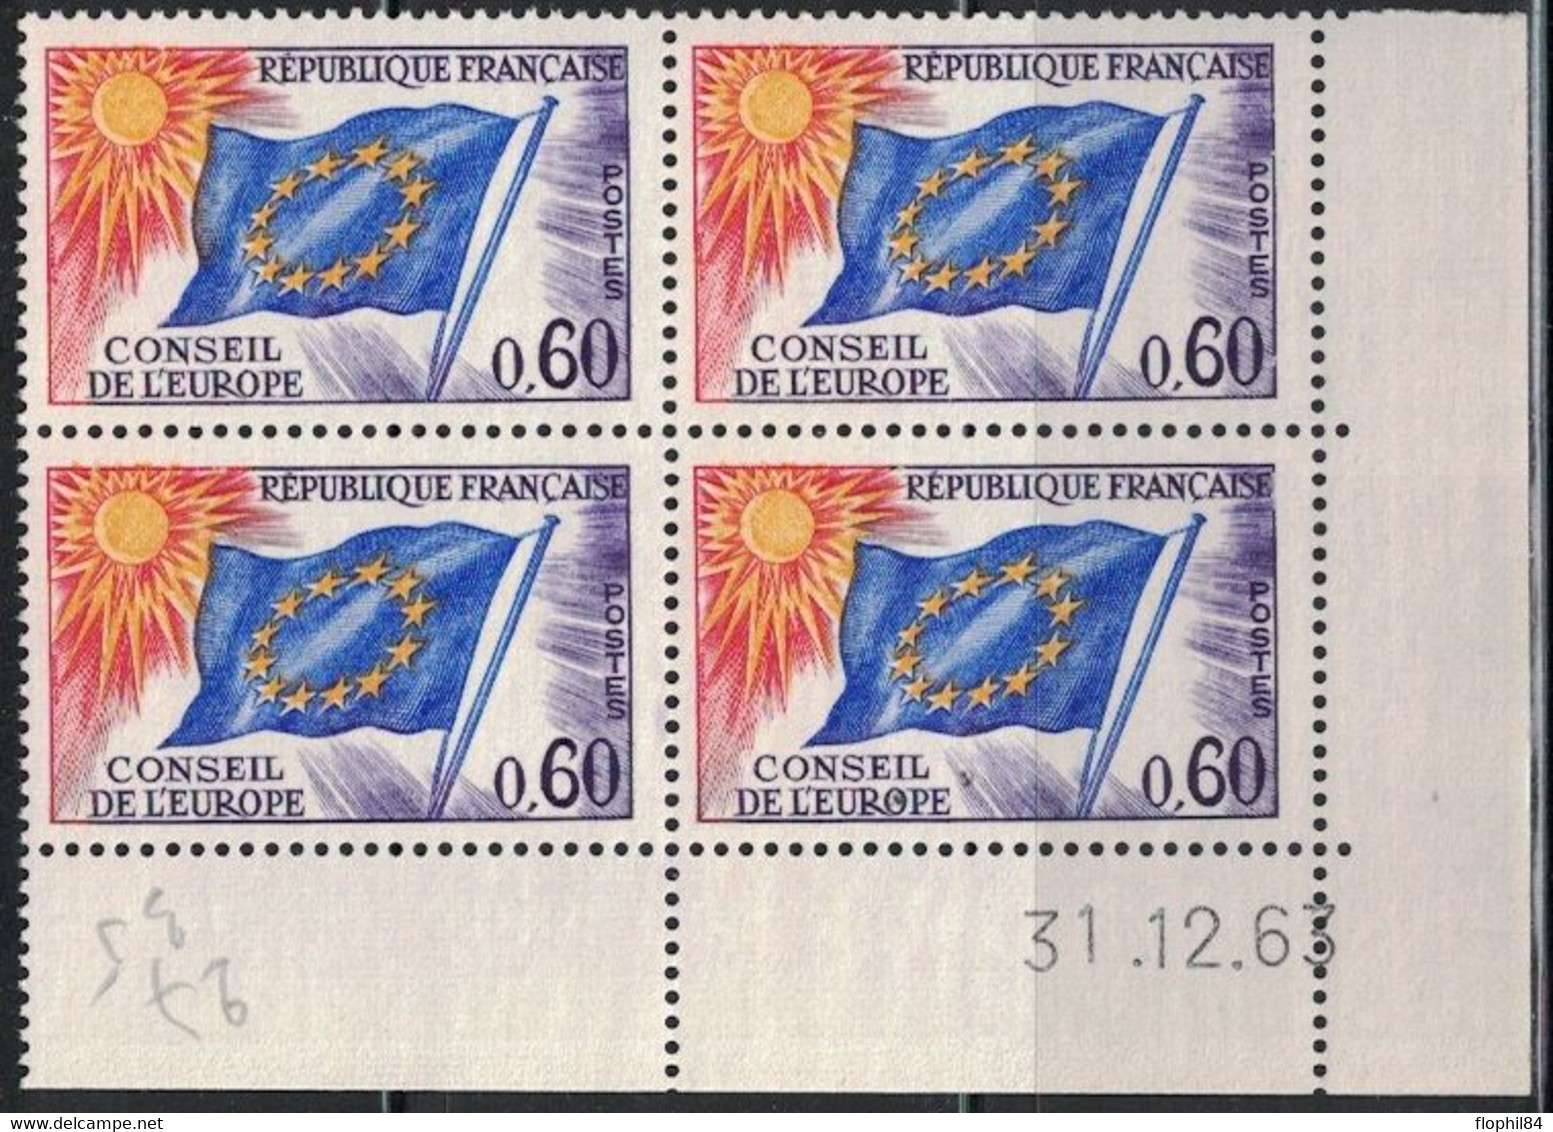 COIN DATE - SERVICE N°34 - 0f60 - CONSEIL DE L'EUROPE - 31-12-1963 - Cote 7€50. - Service